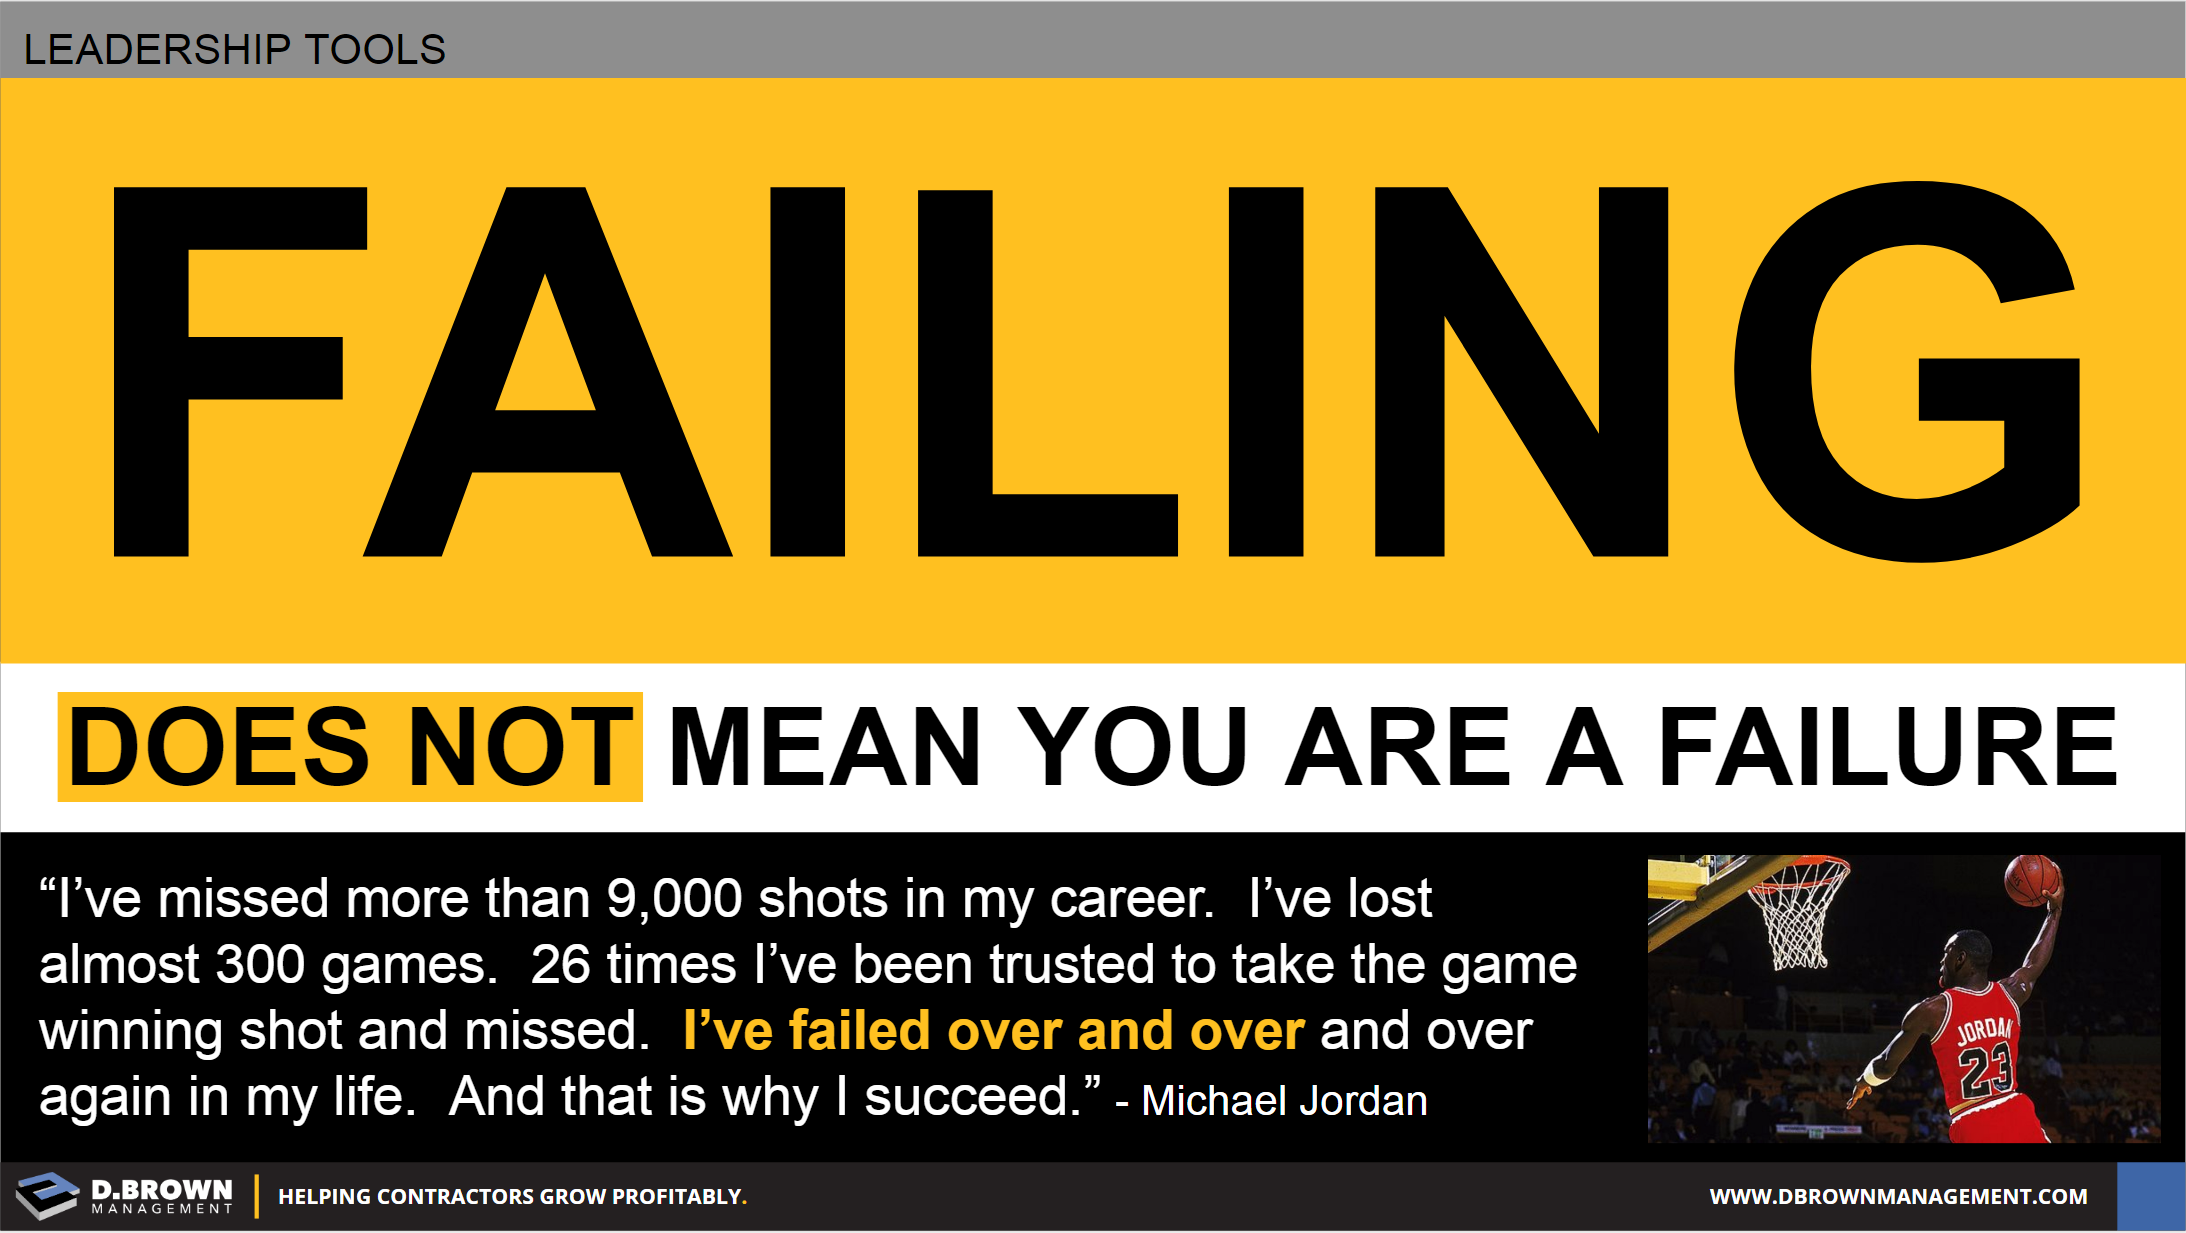 michael jordan quotes failure